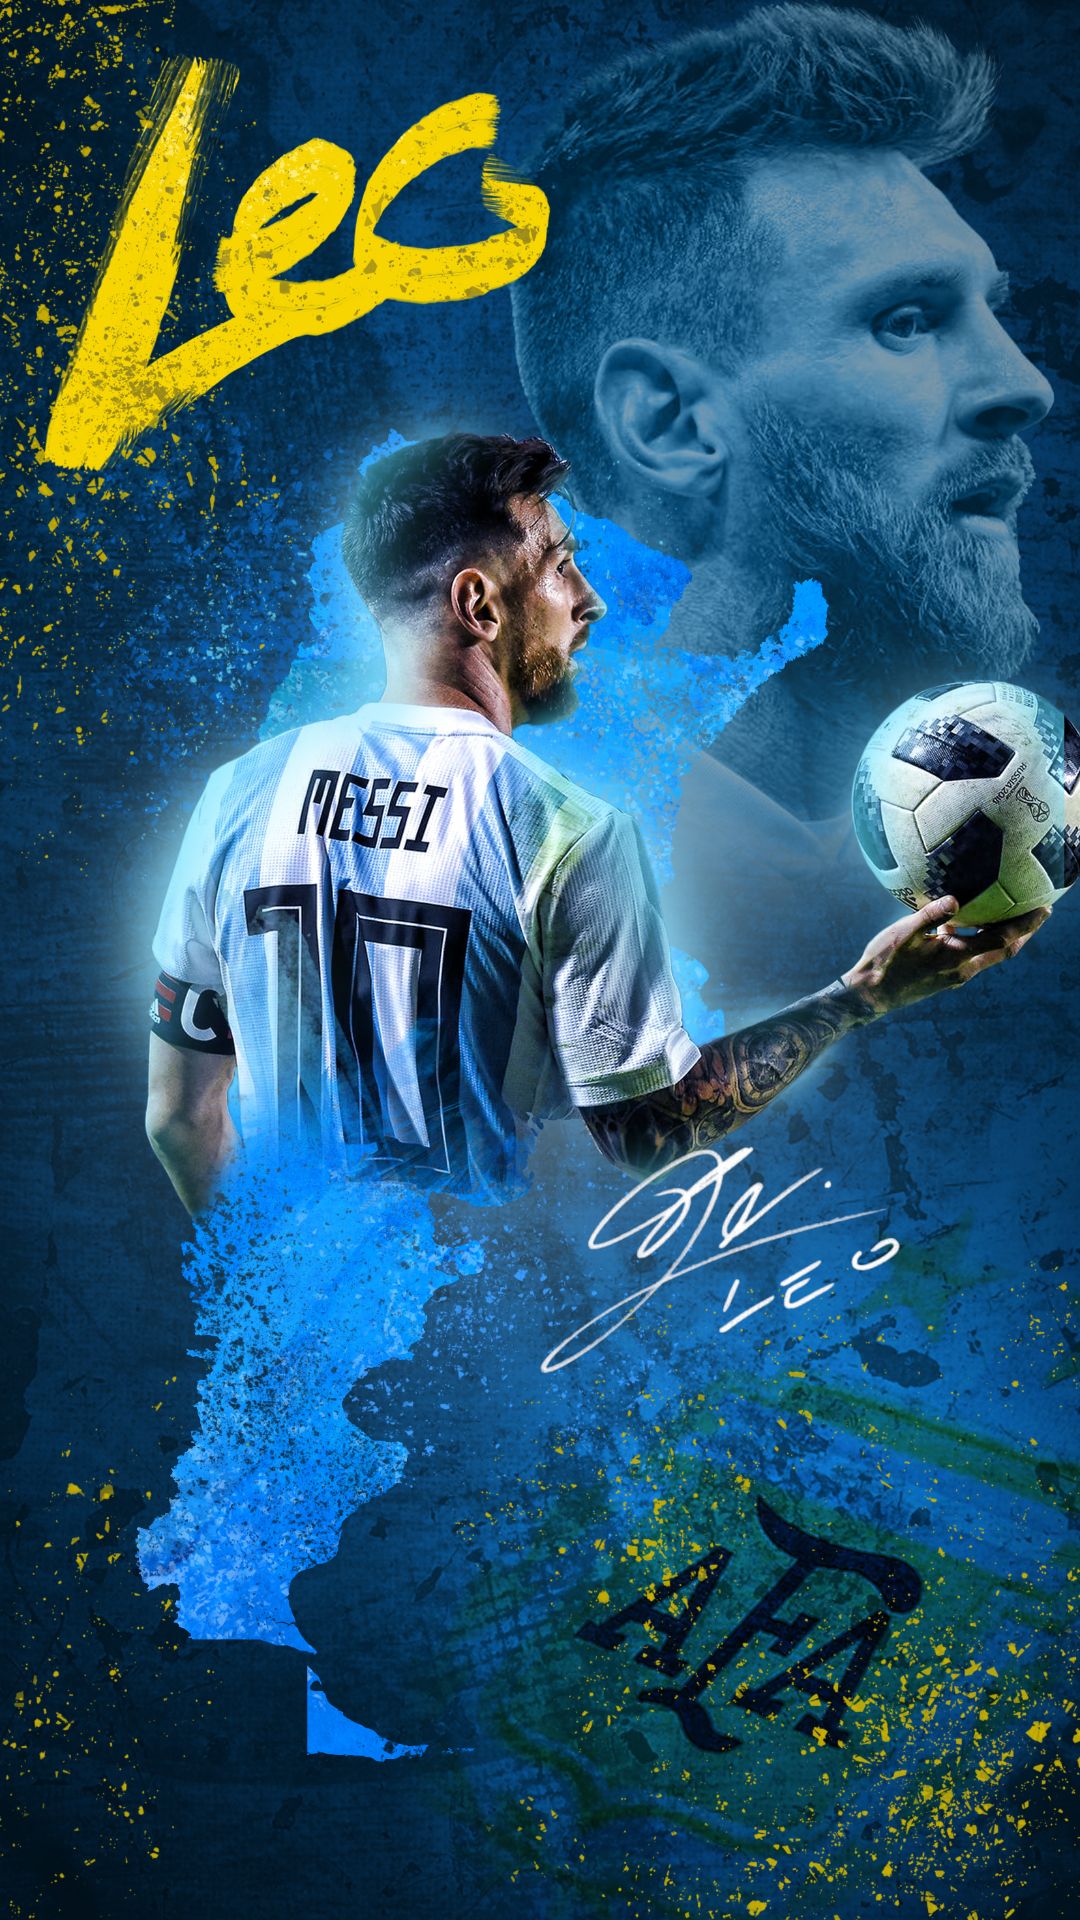 Đếm ngược thời gian đến ngày diễn ra World Cup 2022 với bộ sưu tập hình nền Argentina đầy màu sắc và sức cuốn hút. Cùng nhau thể hiện niềm đam mê và tình yêu dành cho đội bóng tinh túy nhất thế giới. Chắc chắn bạn sẽ không thể bỏ qua hình ảnh này!